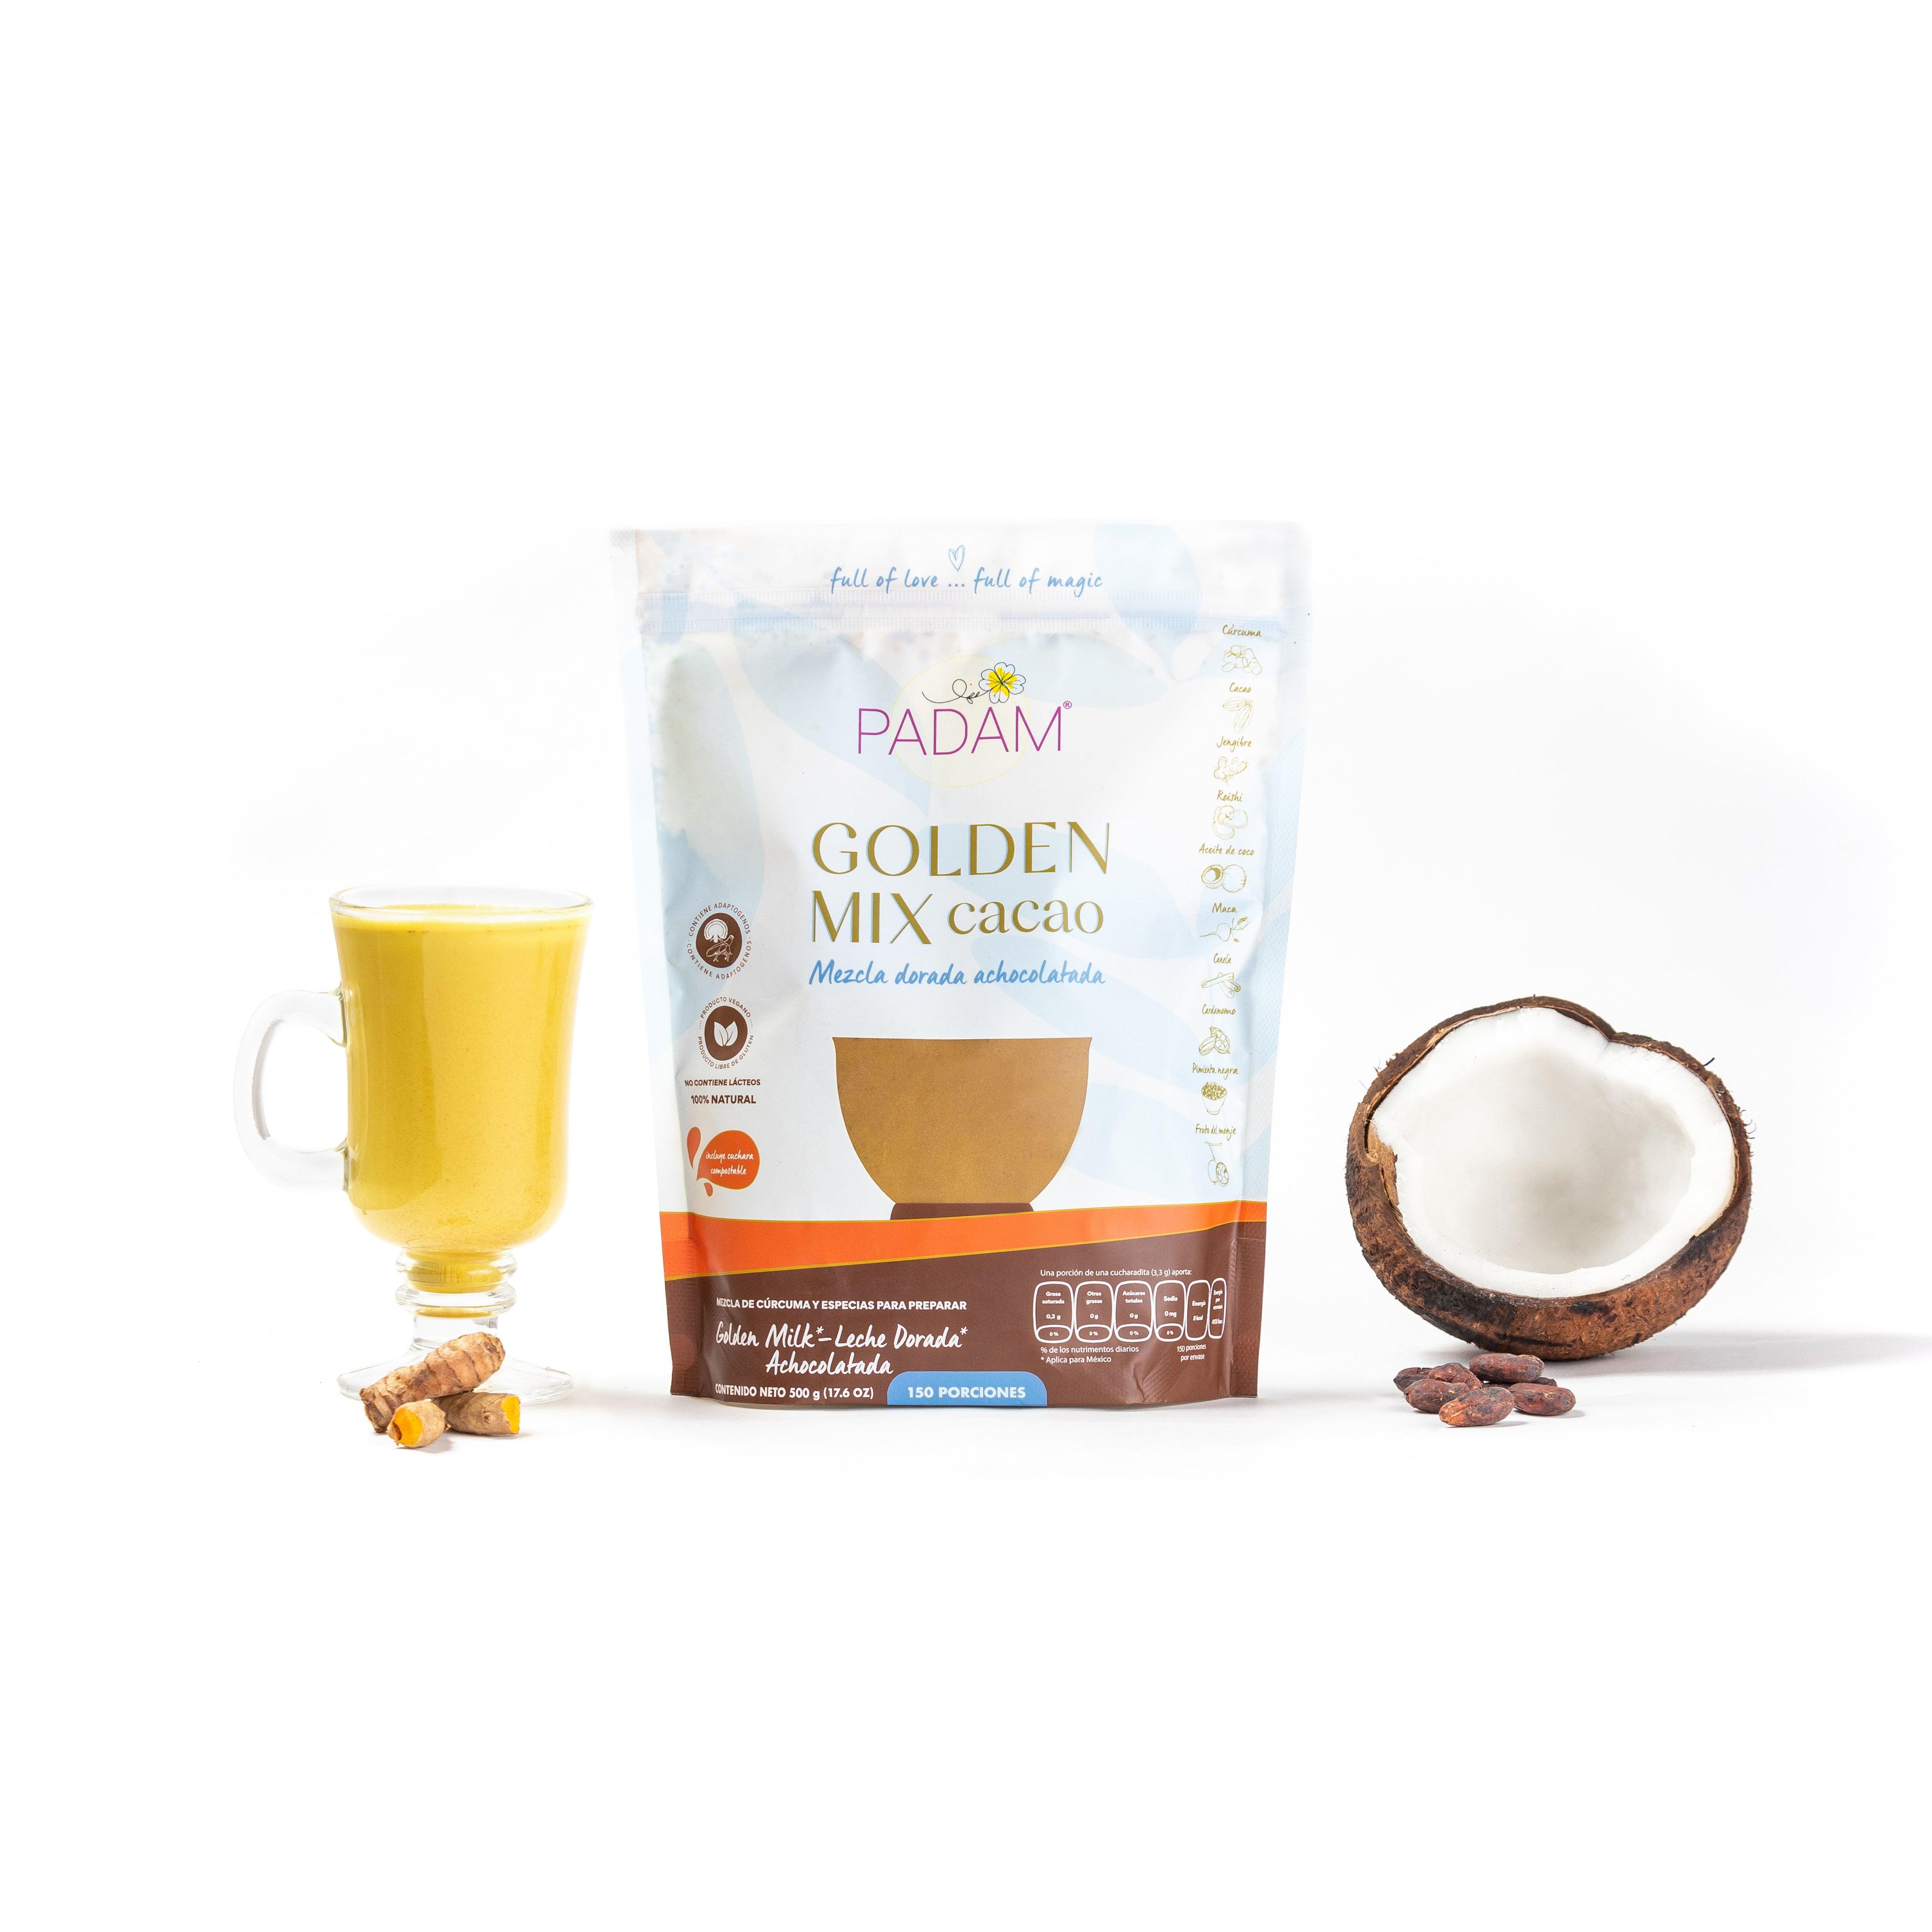 PADAM Golden Milk Cocoa